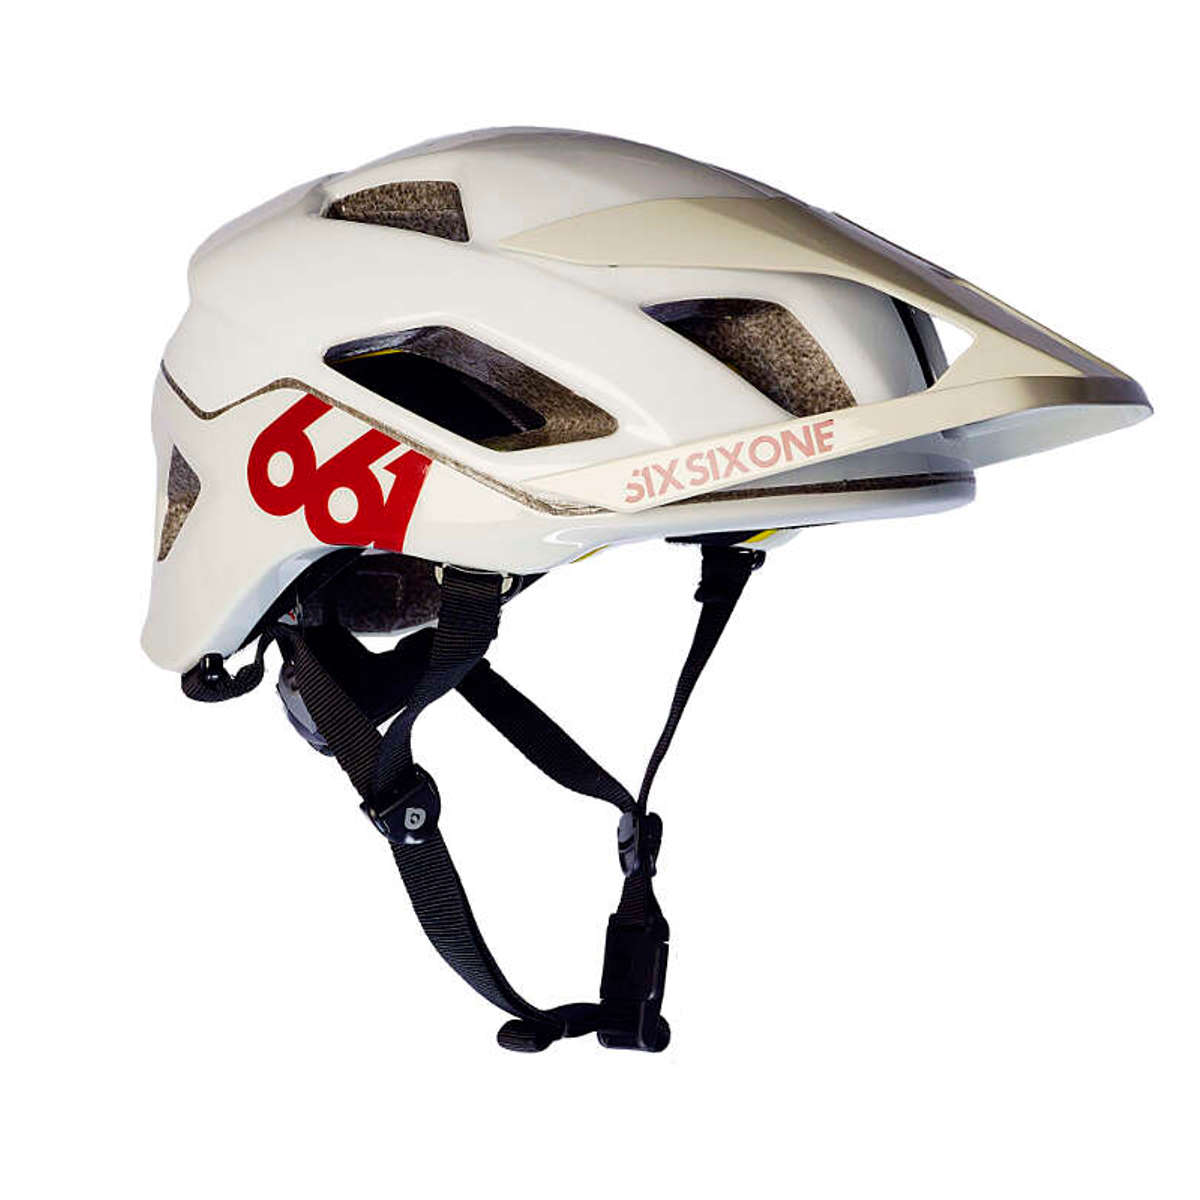 SixSixOne Enduro MTB-Helm Evo AM MIPS Tundra White